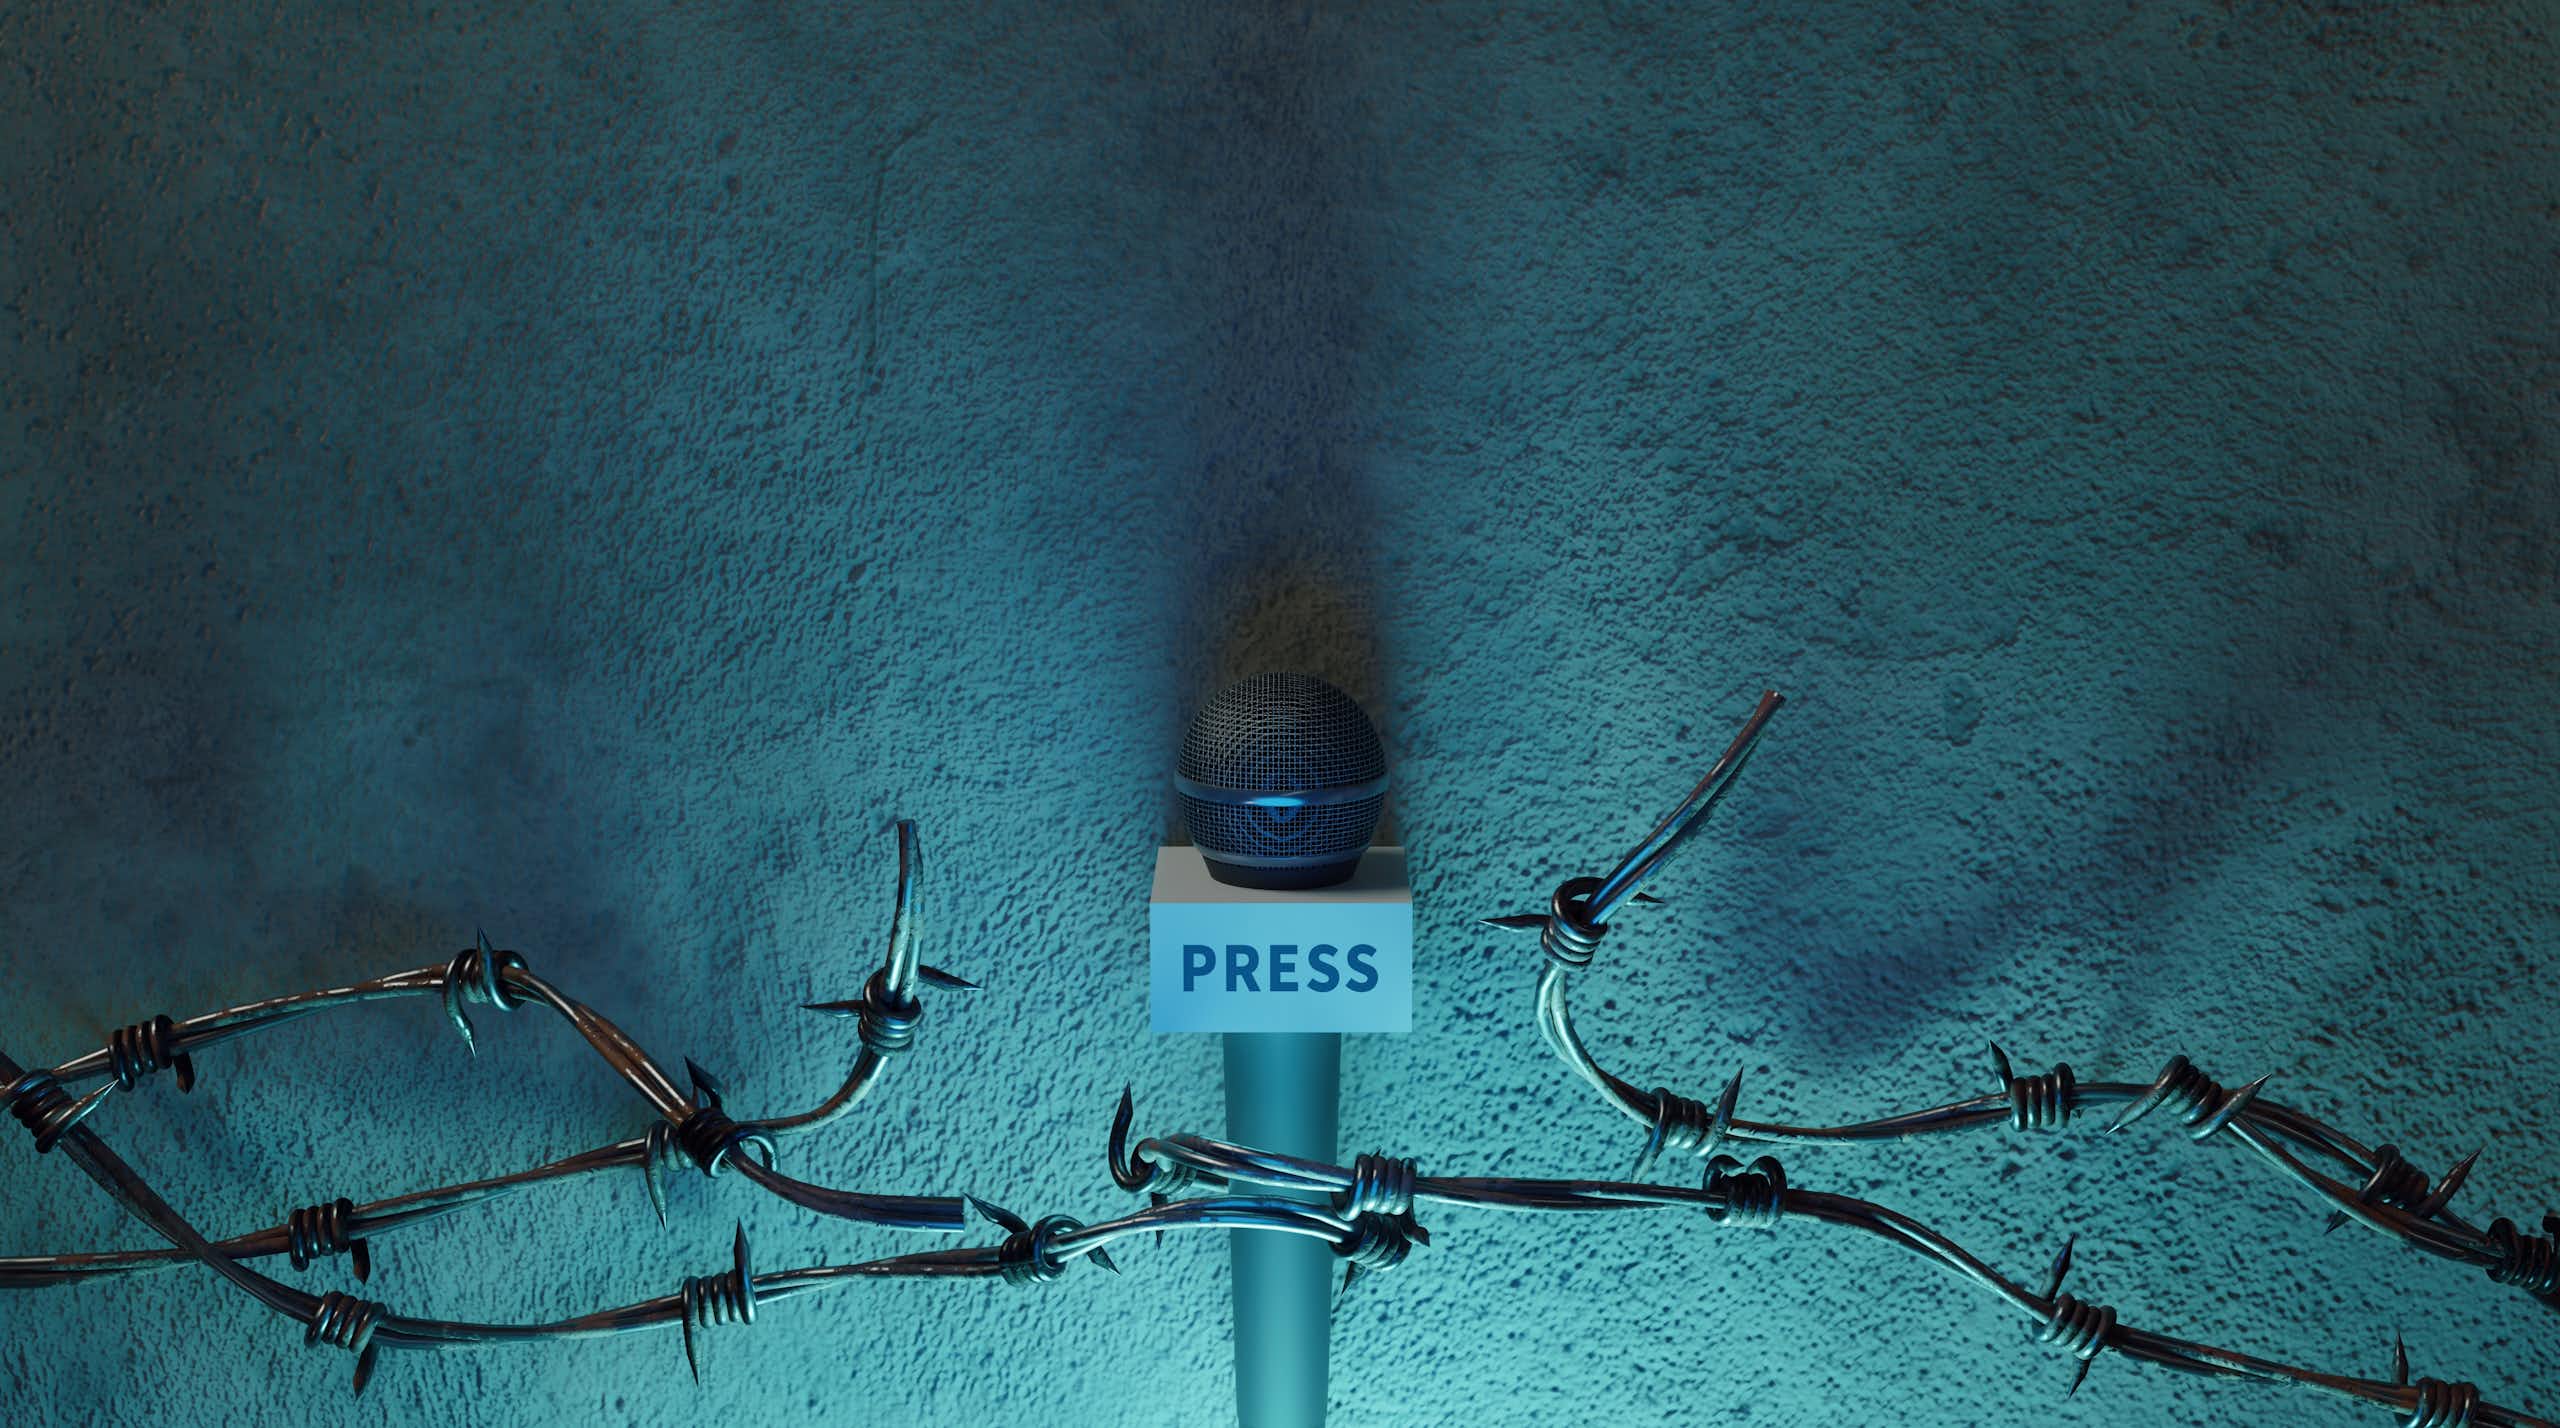 Pengguna internet meningkat tapi kebebasan pers terancam: riset soroti 2 tantangan yang dihadapi media digital